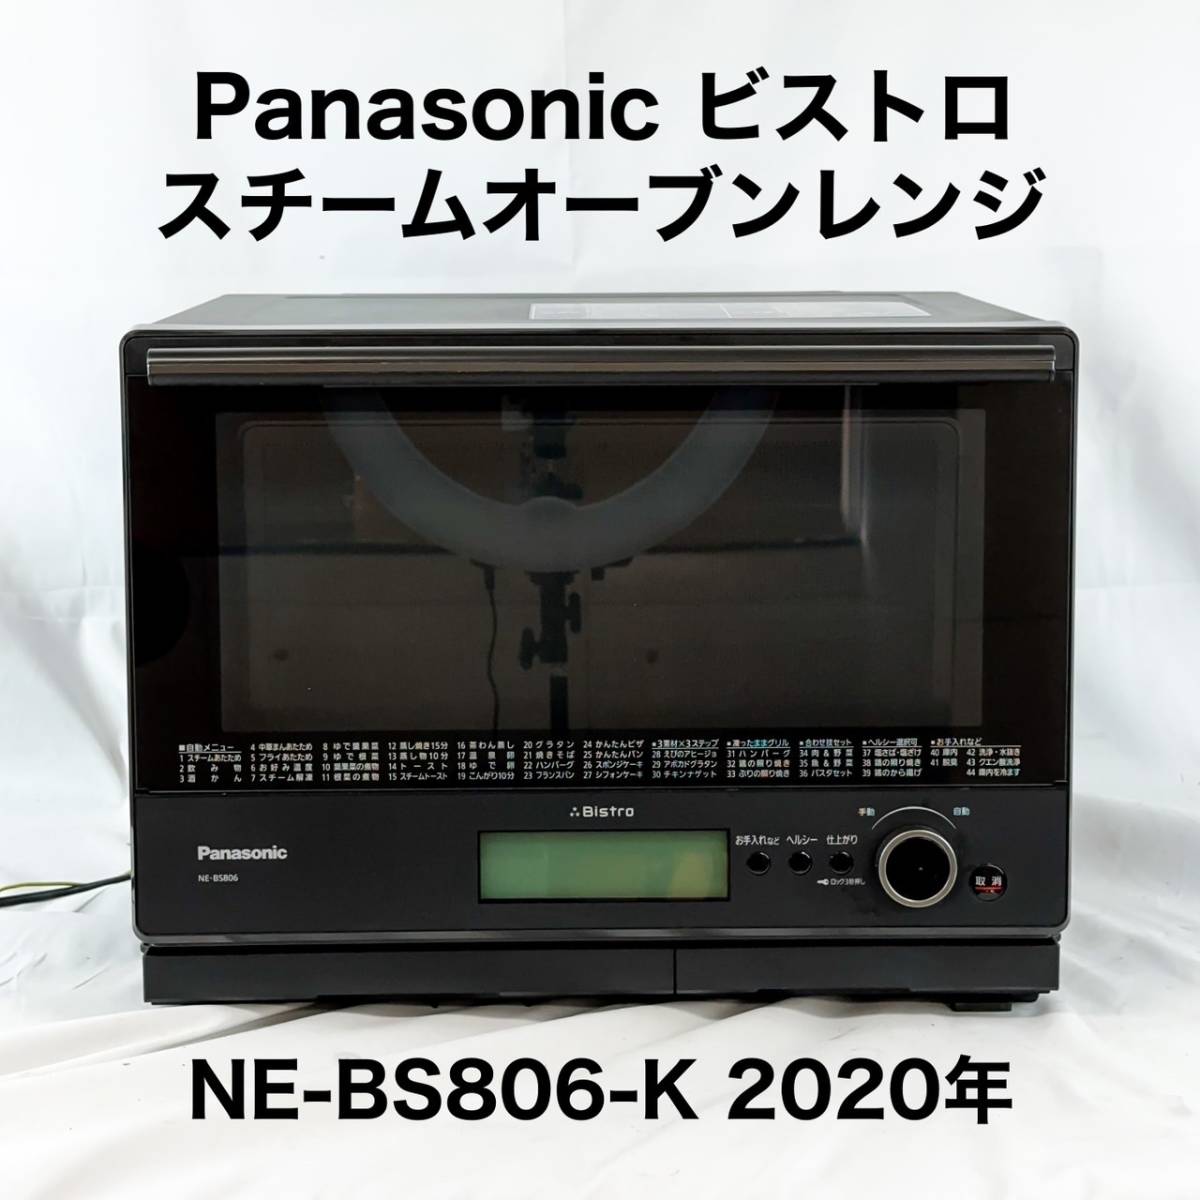 Panasonic パナソニック ビストロ スチームオーブンレンジ オーブン